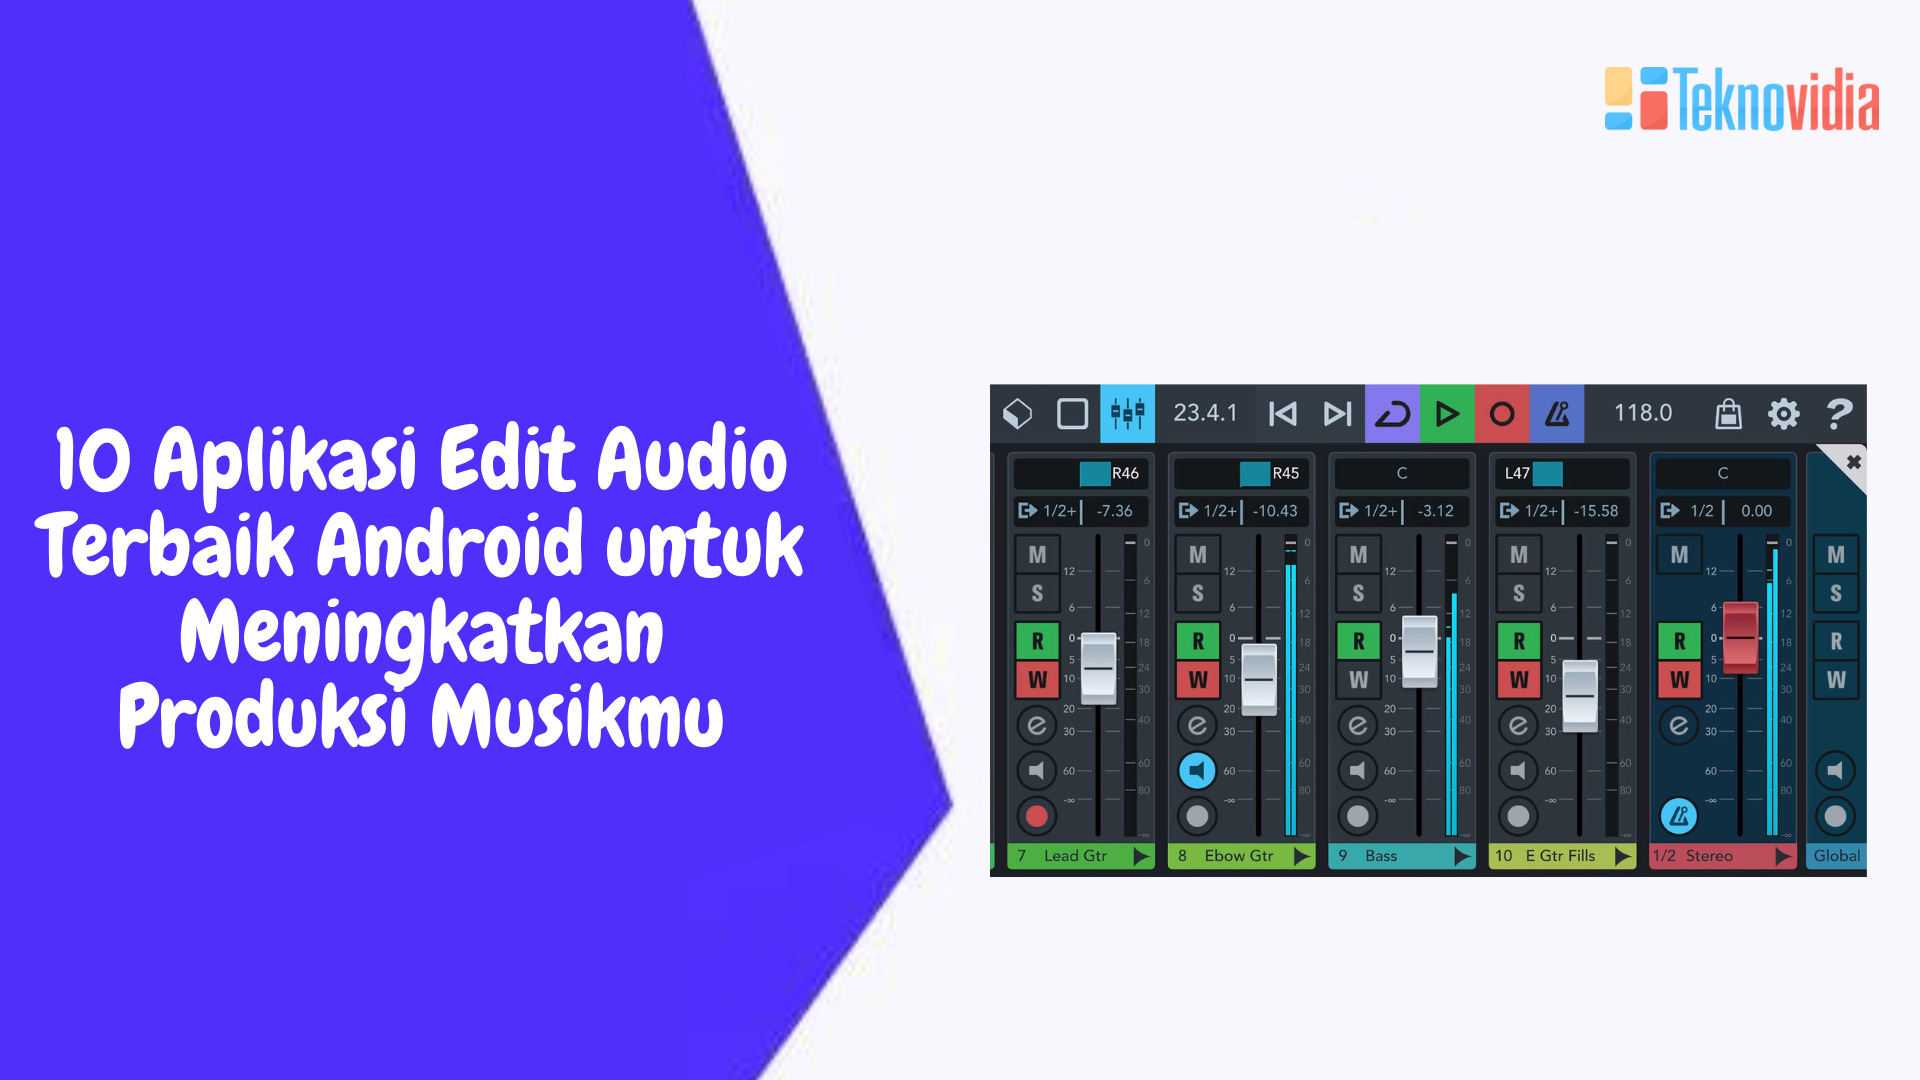 10 Aplikasi Edit Audio Terbaik Android untuk Meningkatkan Produksi Musikmu